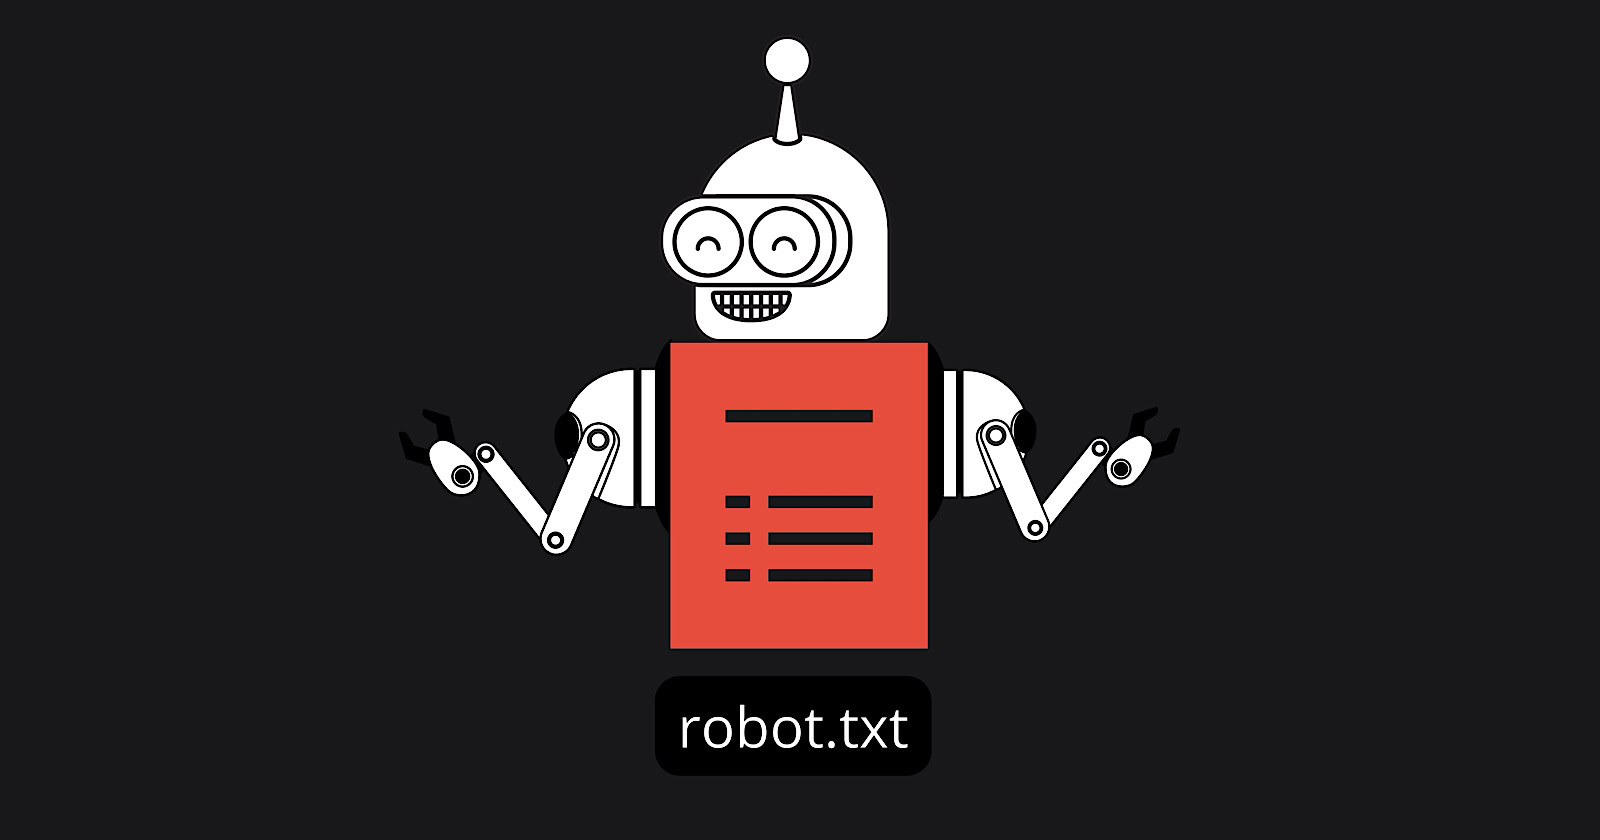 Robots.txt cumple 30 años: Google destaca las fortalezas ocultas